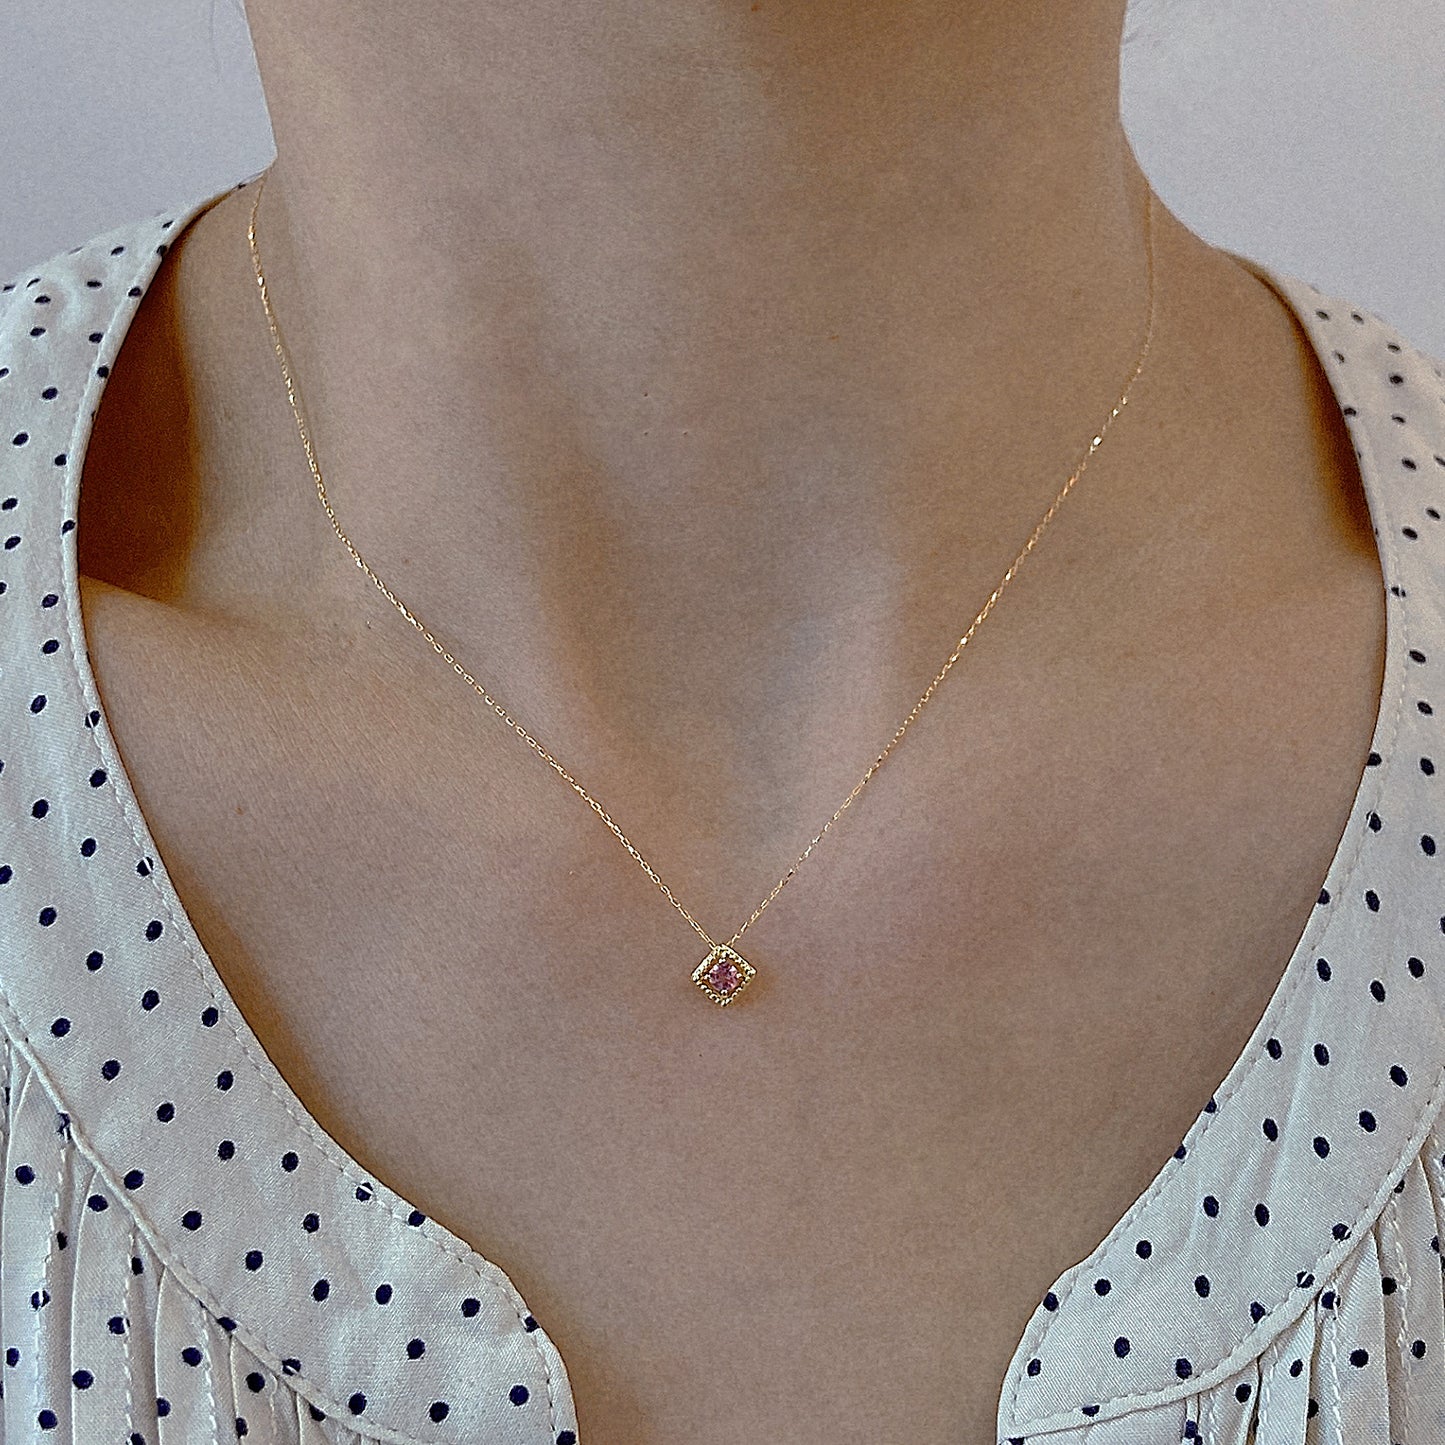 Rhombus Birthstone Necklace (Oct - Pink Tourmaline)